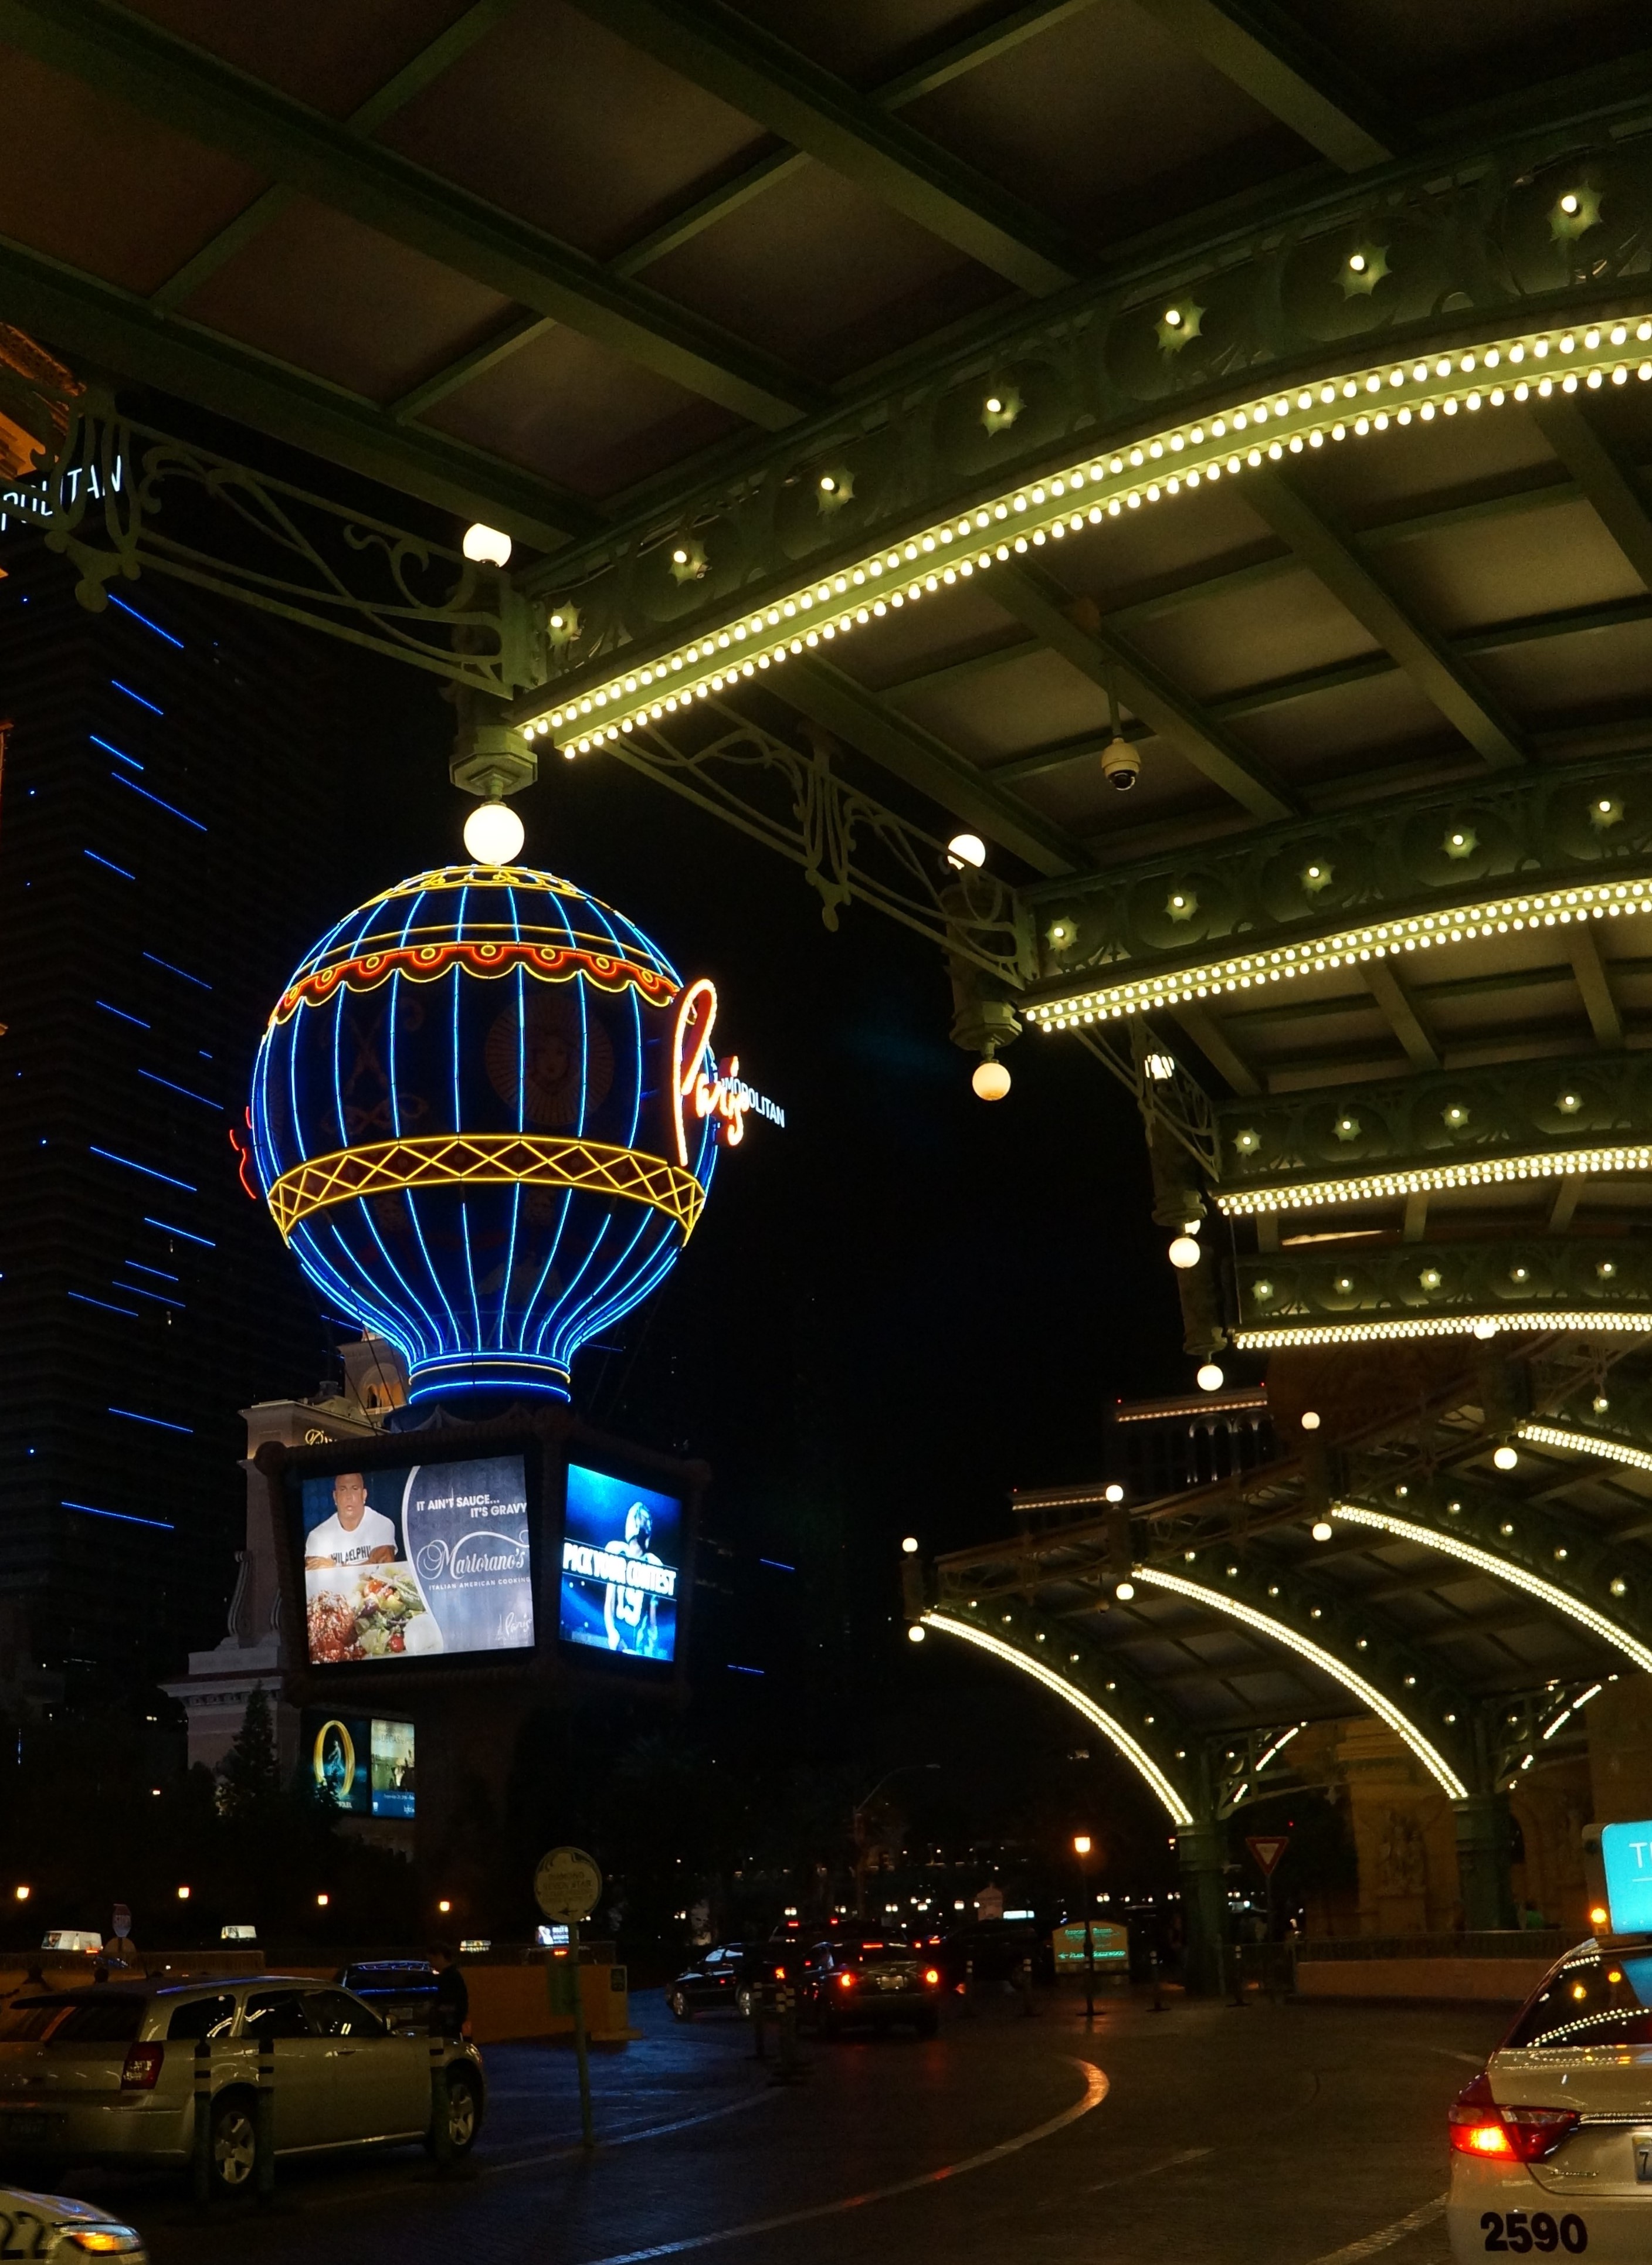 The exterior of the Paris hotel-casino in Las Vegas are lit up